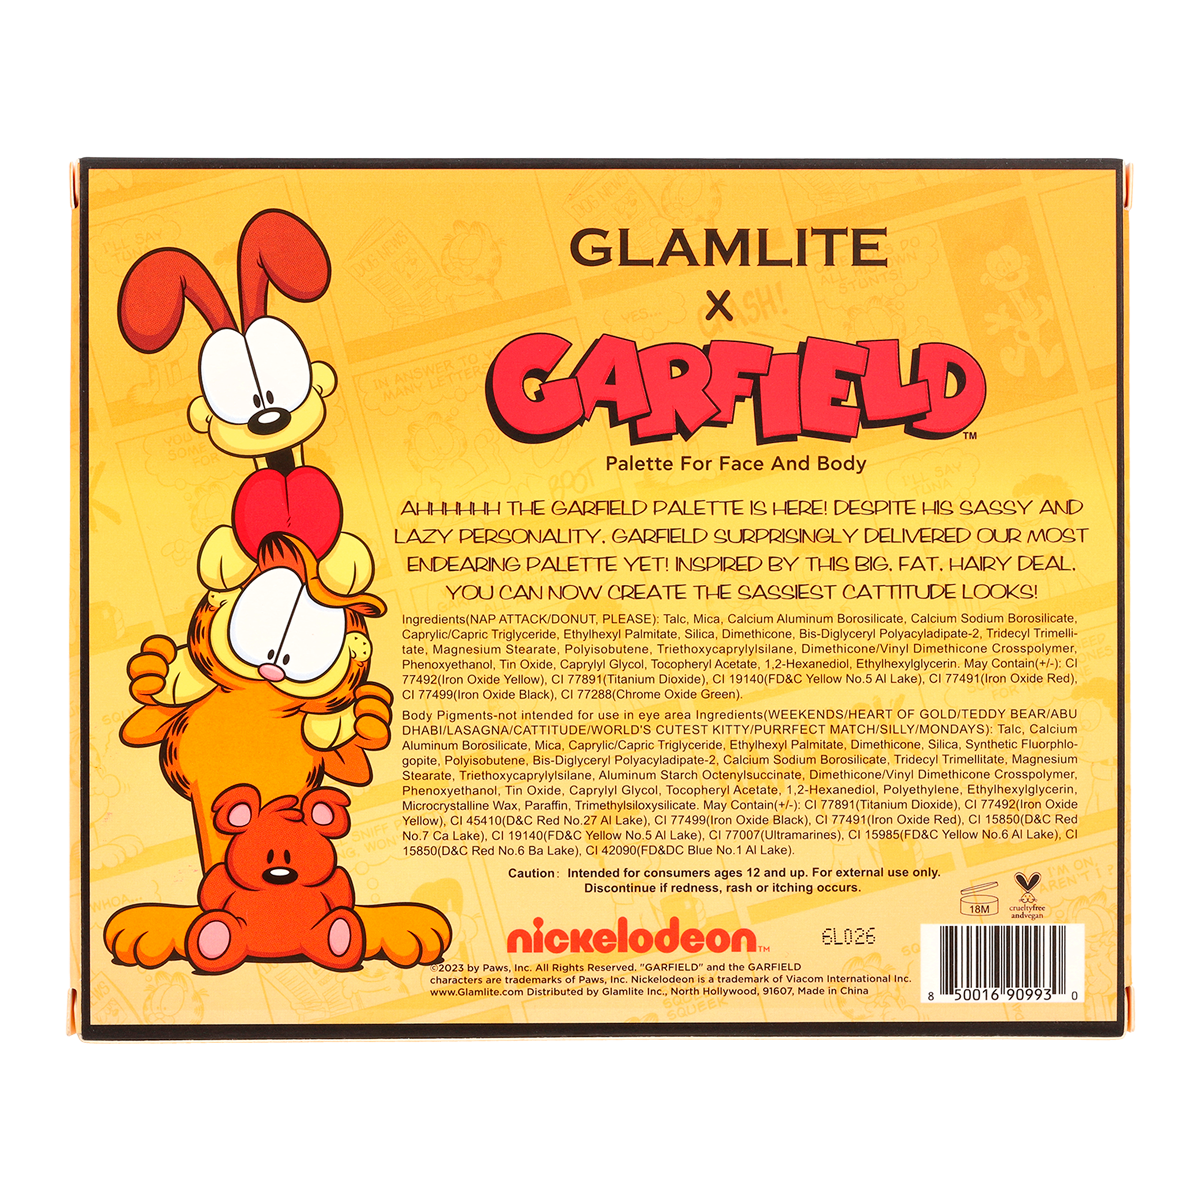 Garfield x Glamlite 12 Shadow Palette